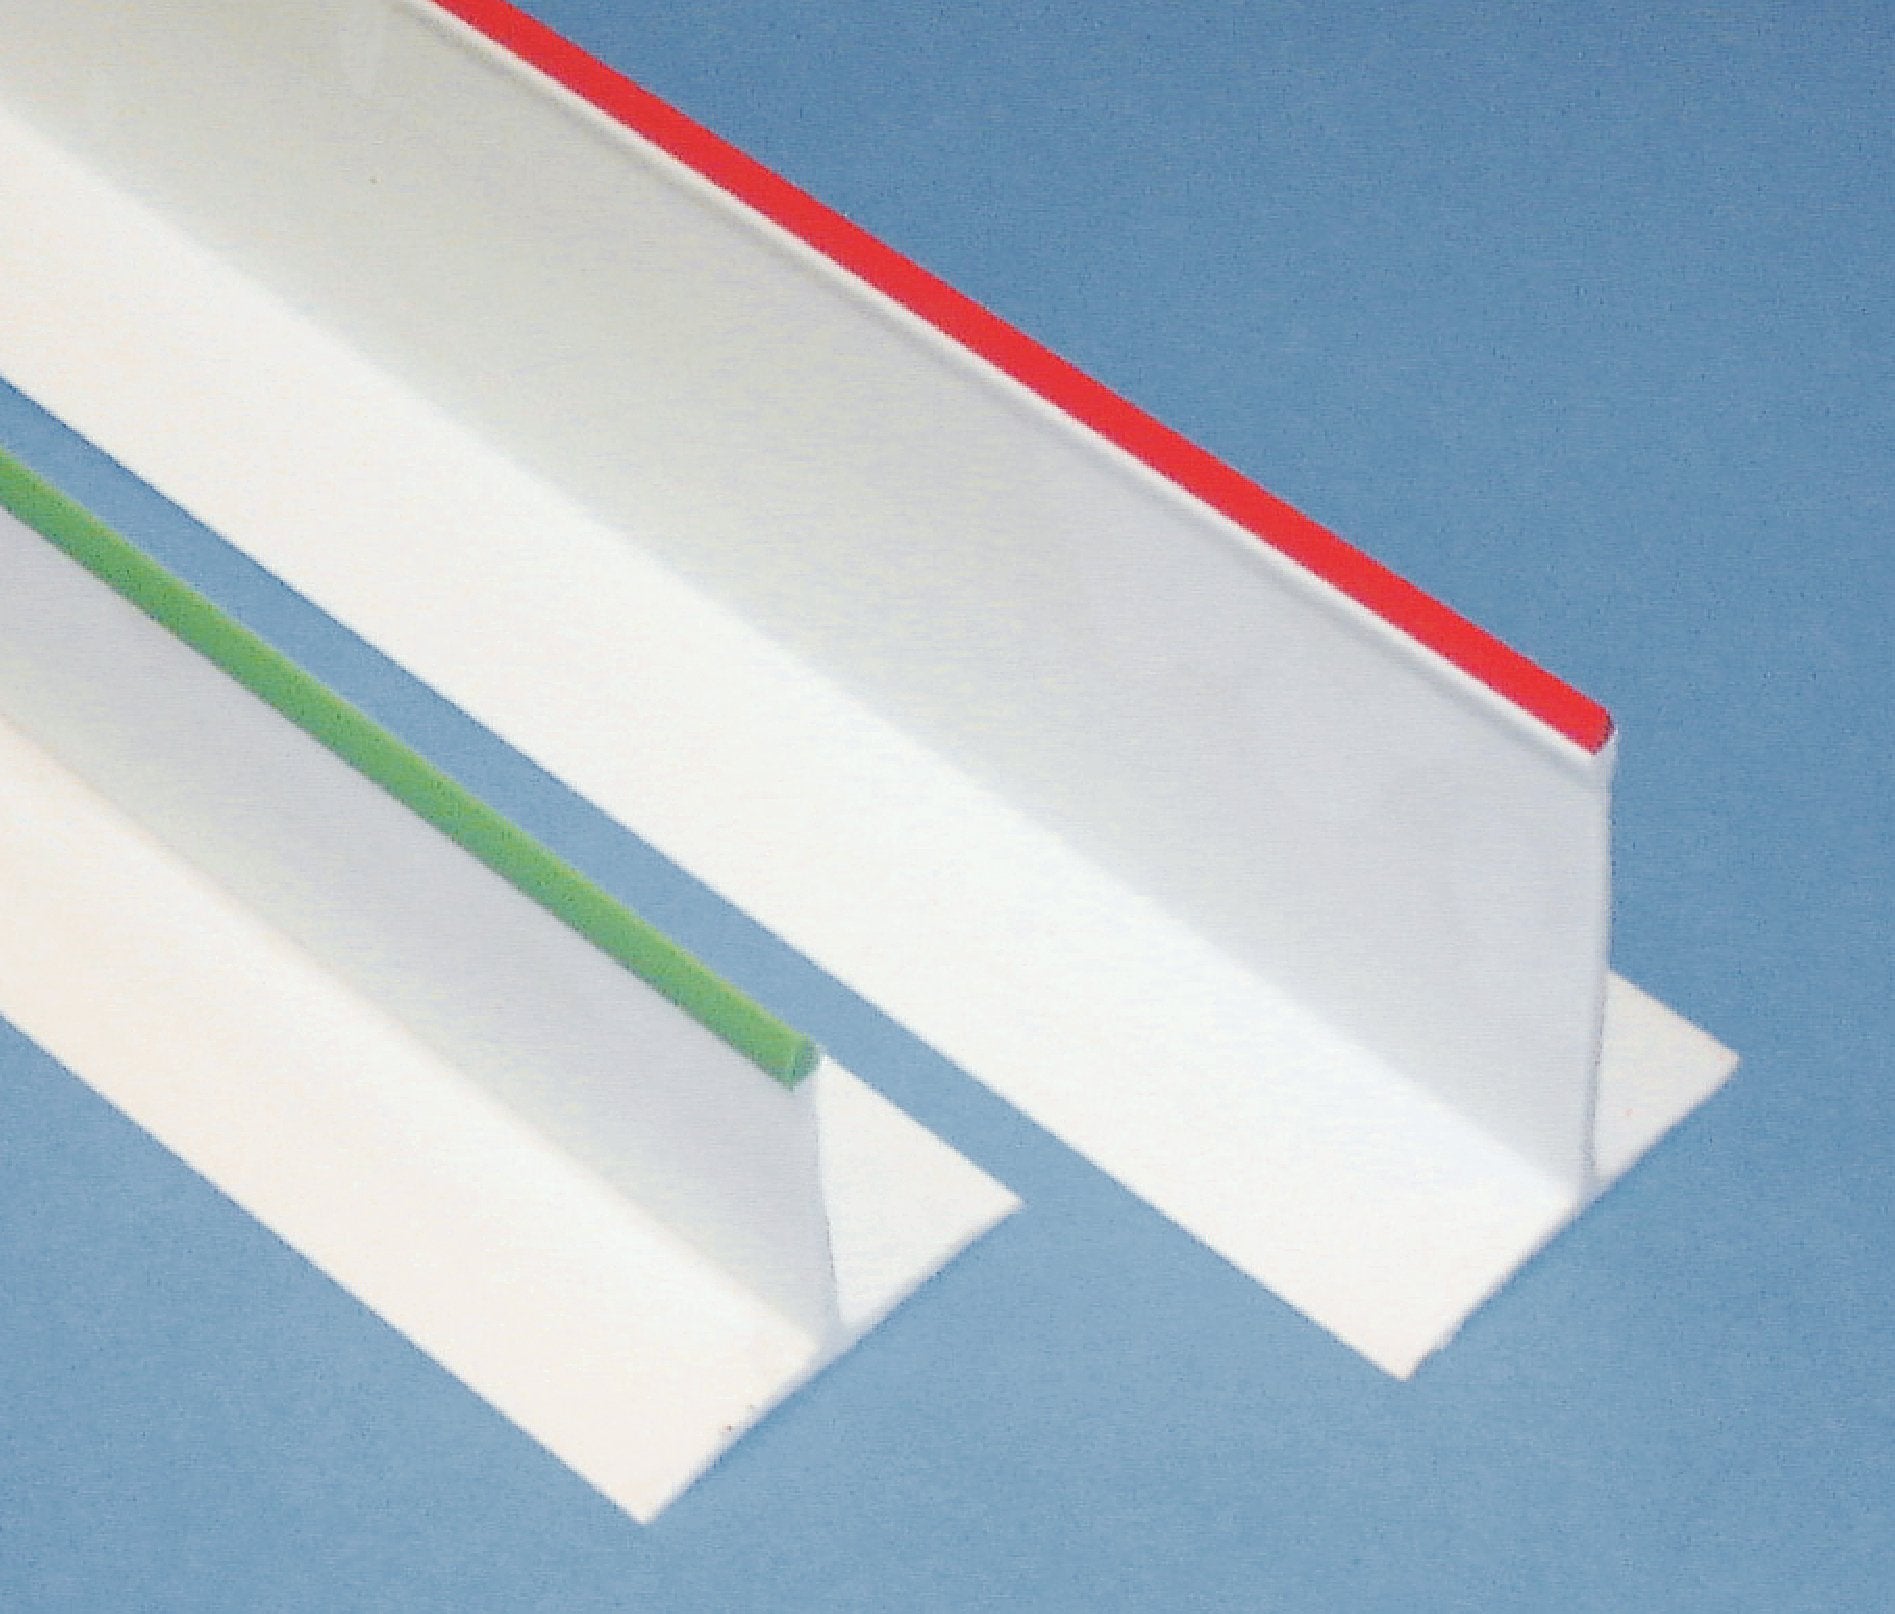 Omcan - White & Red 3” x 30” Divider, 15/cs - 10764